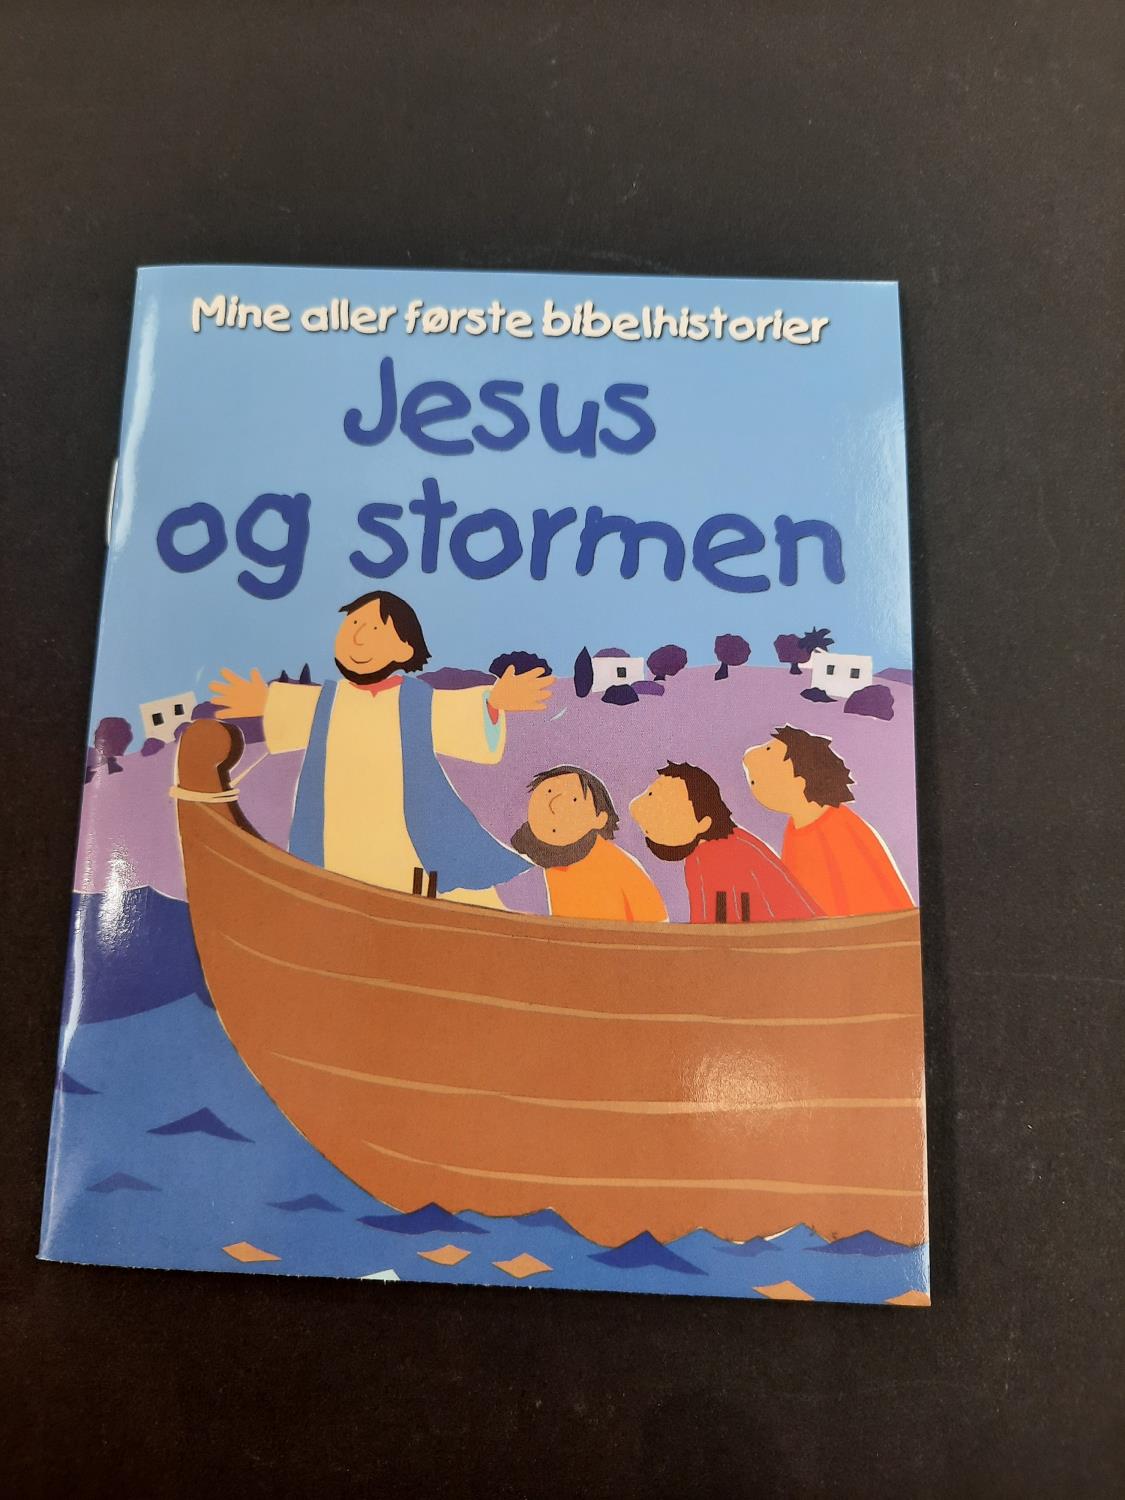 Jesus og stormen - Min aller første bibelhistorier